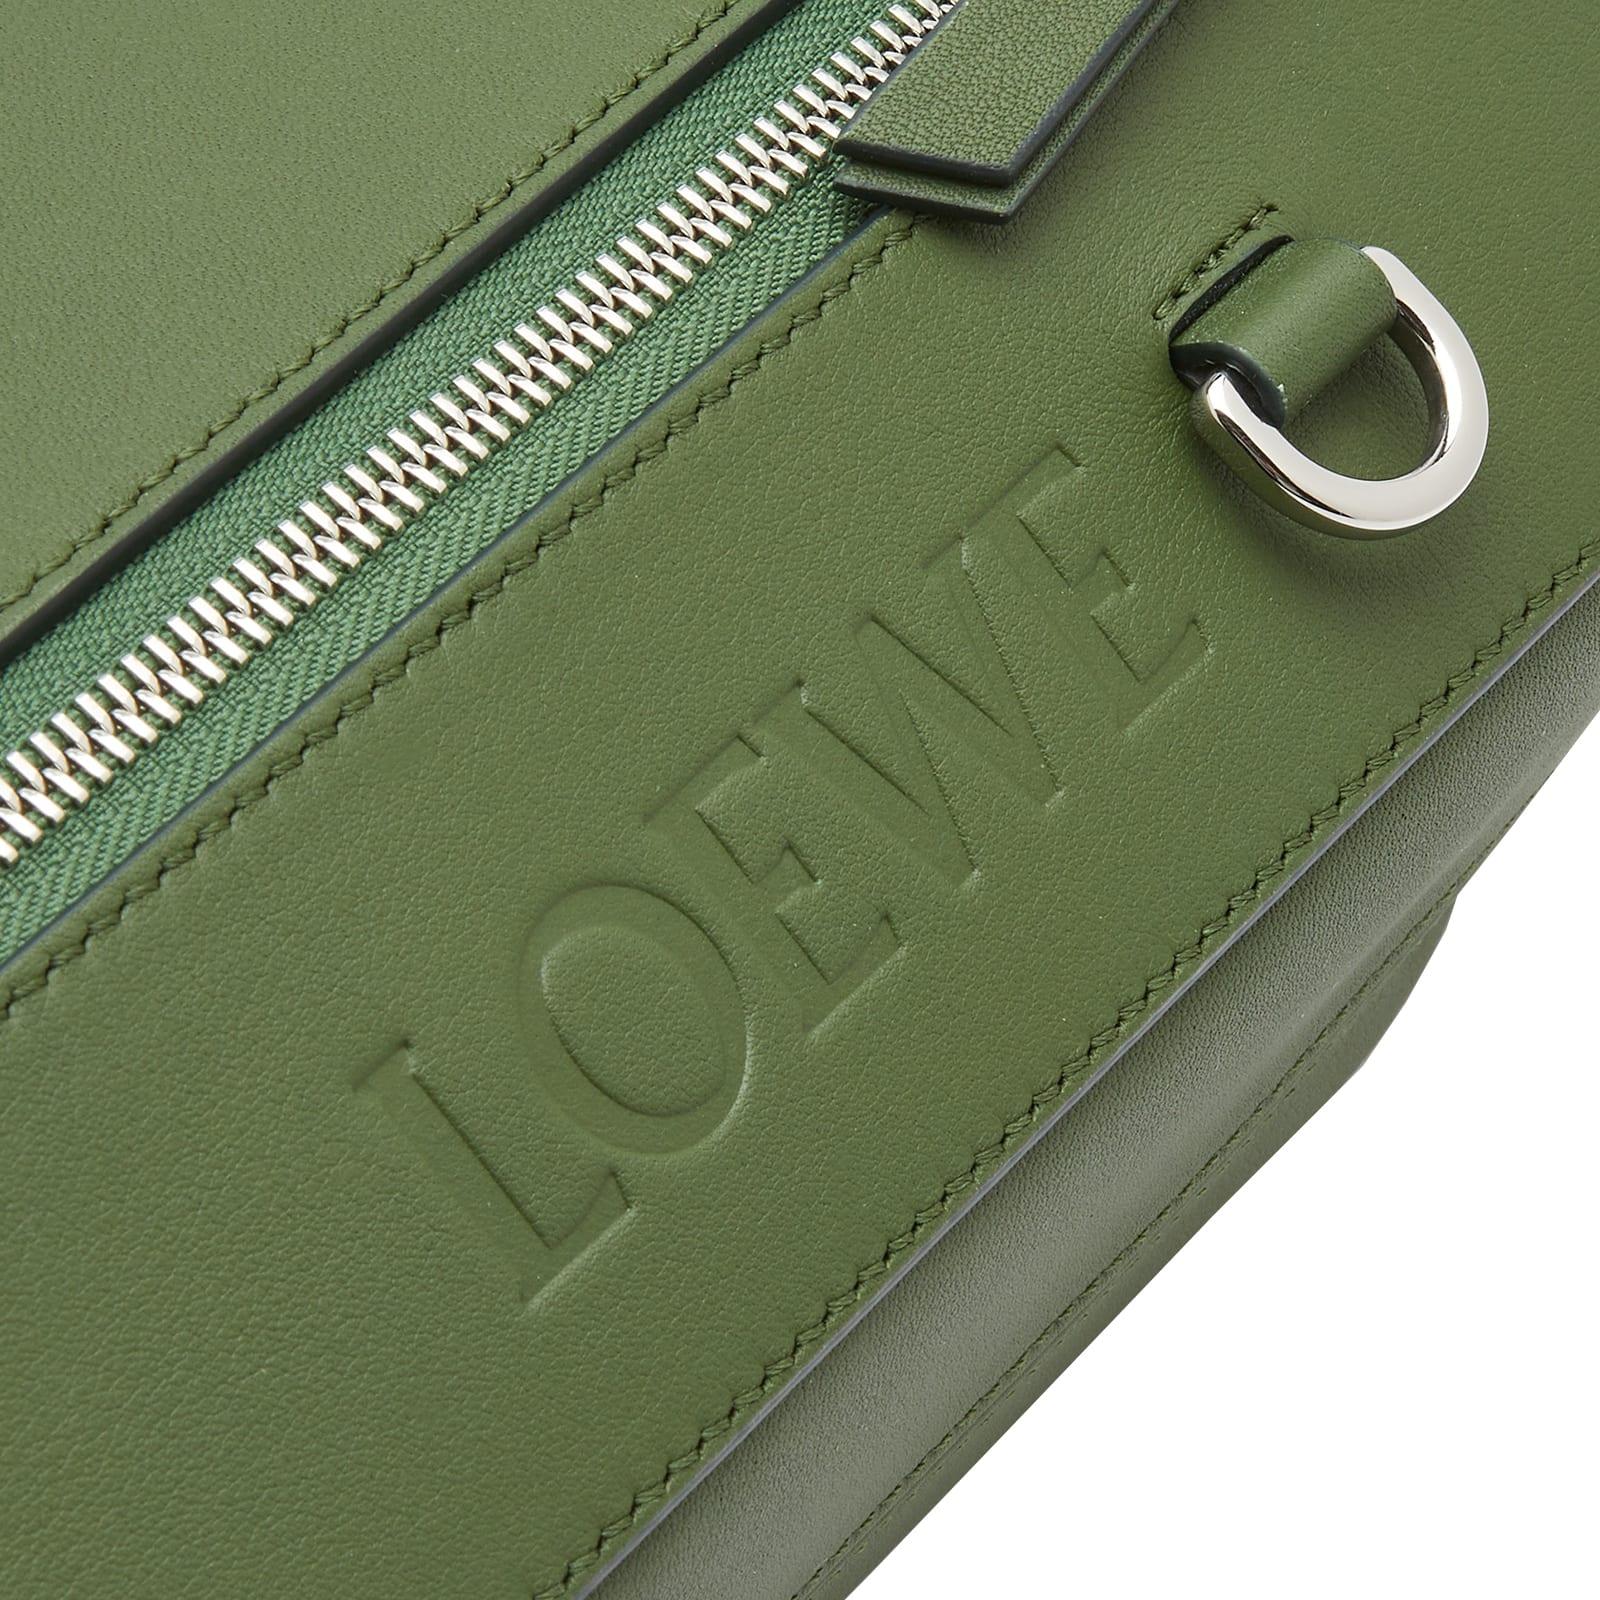 Loewe Sling Bag Singapore Flash Sales | website.jkuat.ac.ke